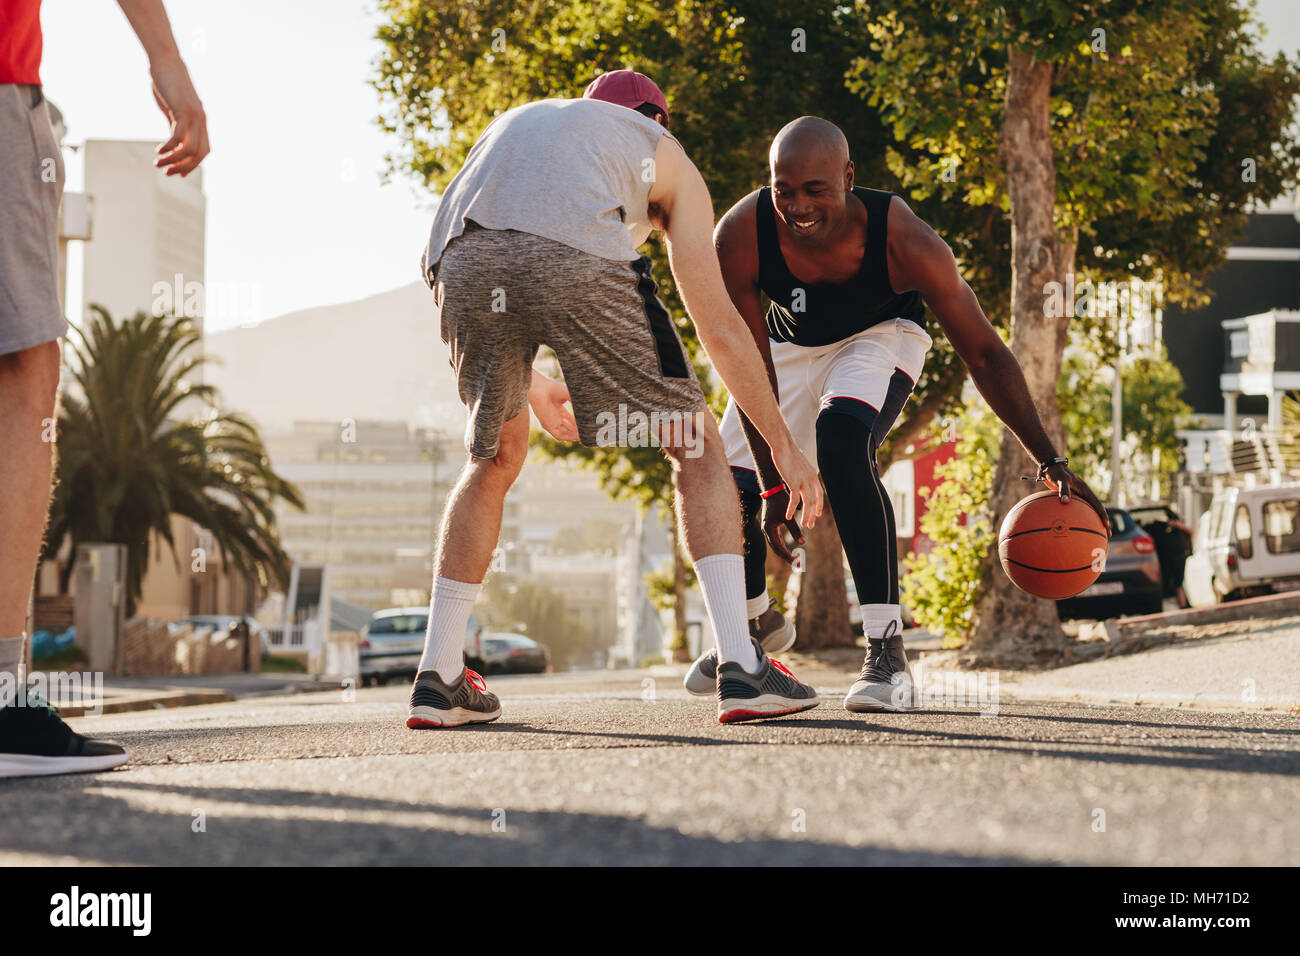 Gli uomini la riproduzione di gioco di basket in una giornata di sole su una strada vuota. Gli uomini praticano la pallacanestro talento nel dribbling sulla strada. Foto Stock